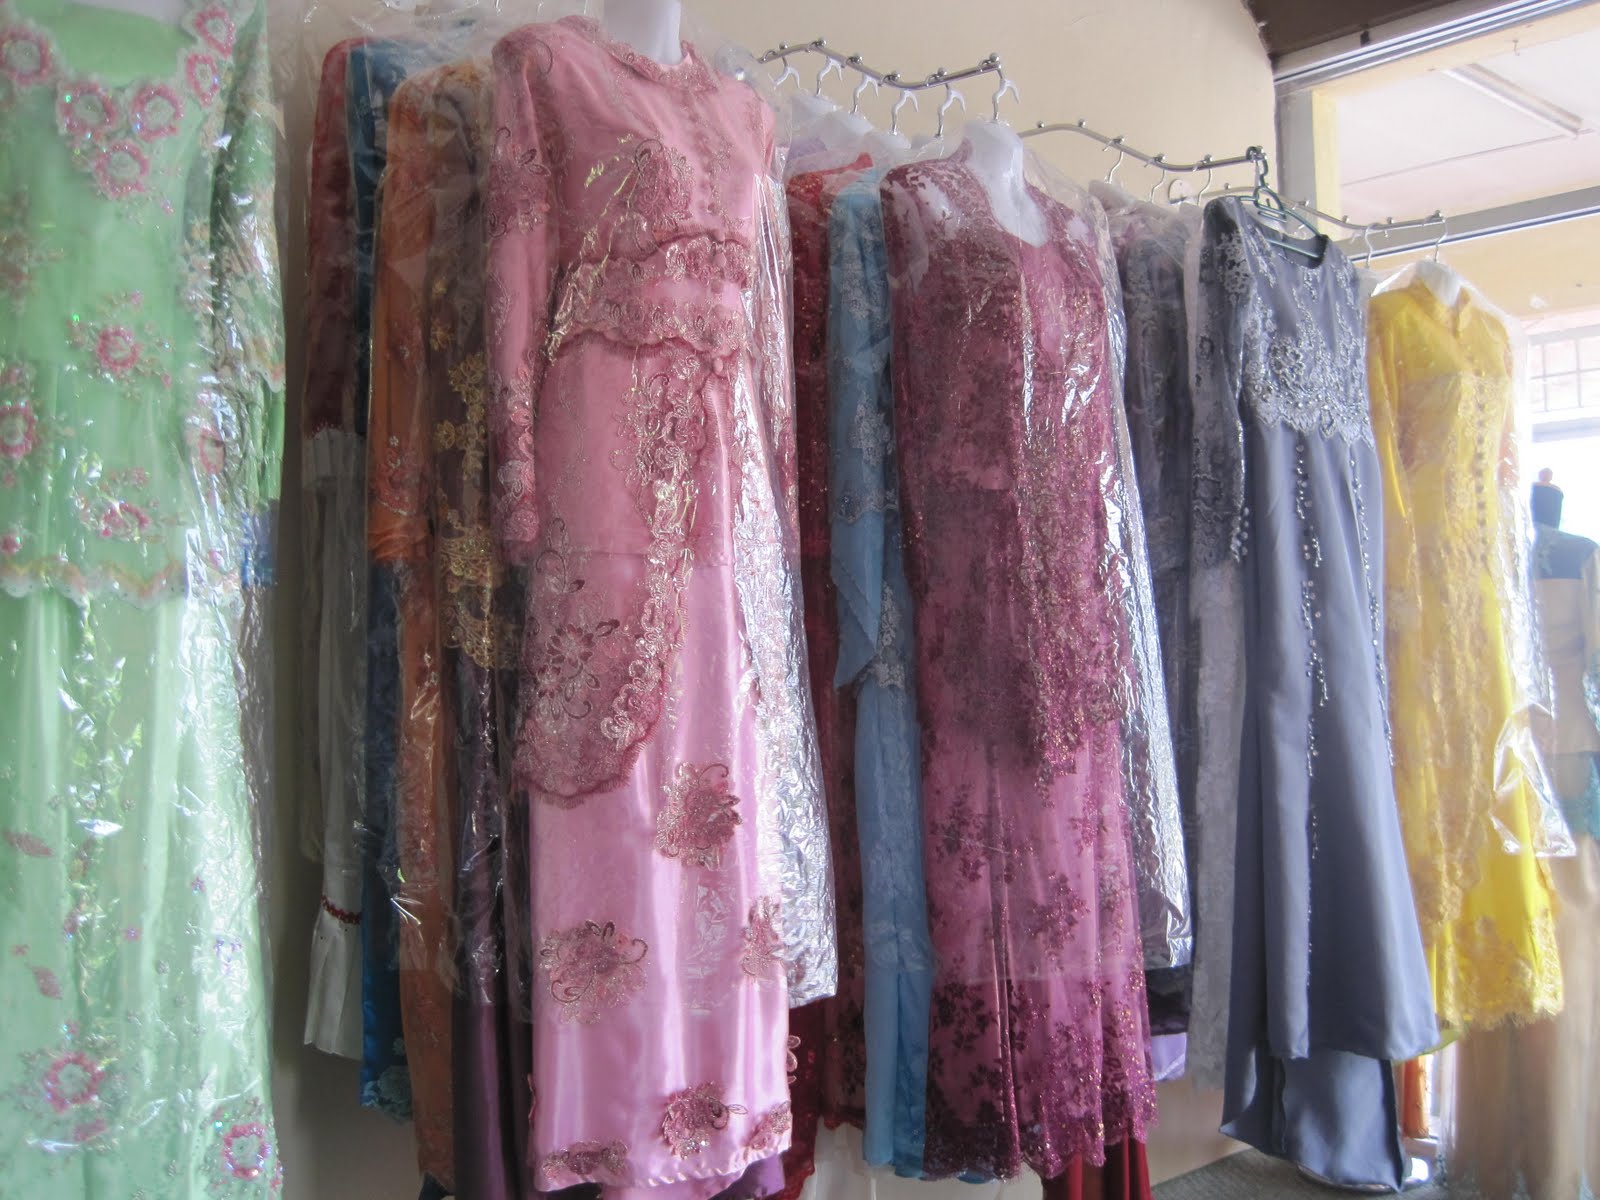 BUTIK PENGANTIN ANDA: Baju Pengantin Di Butik Melati Cottage...Harga